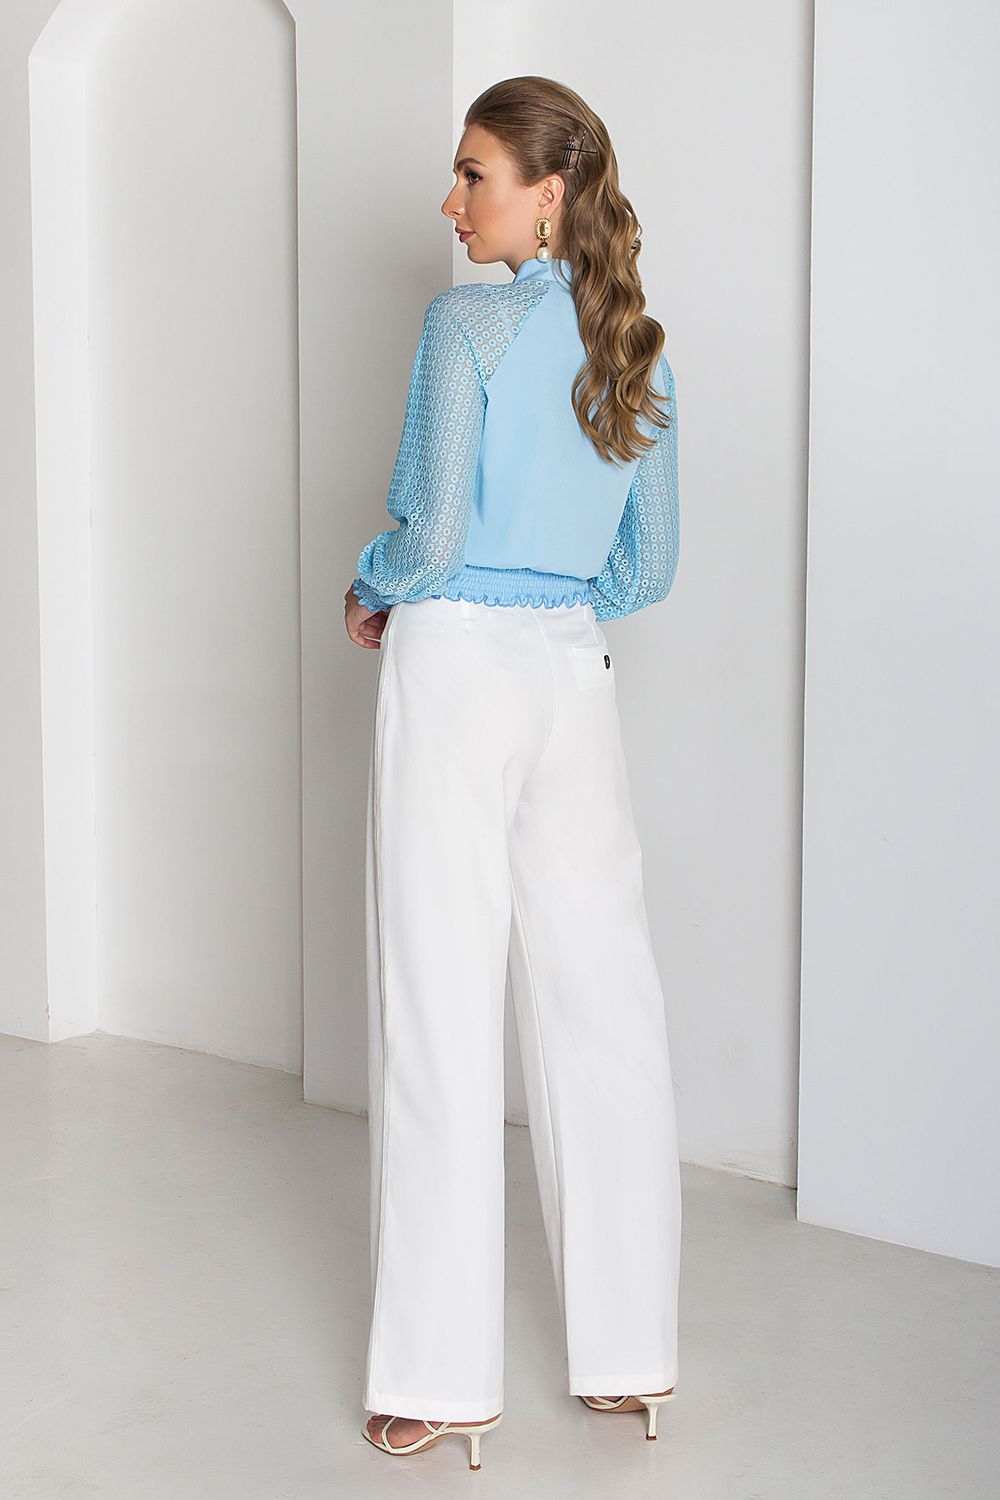 Нарядная модная блузка с гипюром голубого цвета - фото